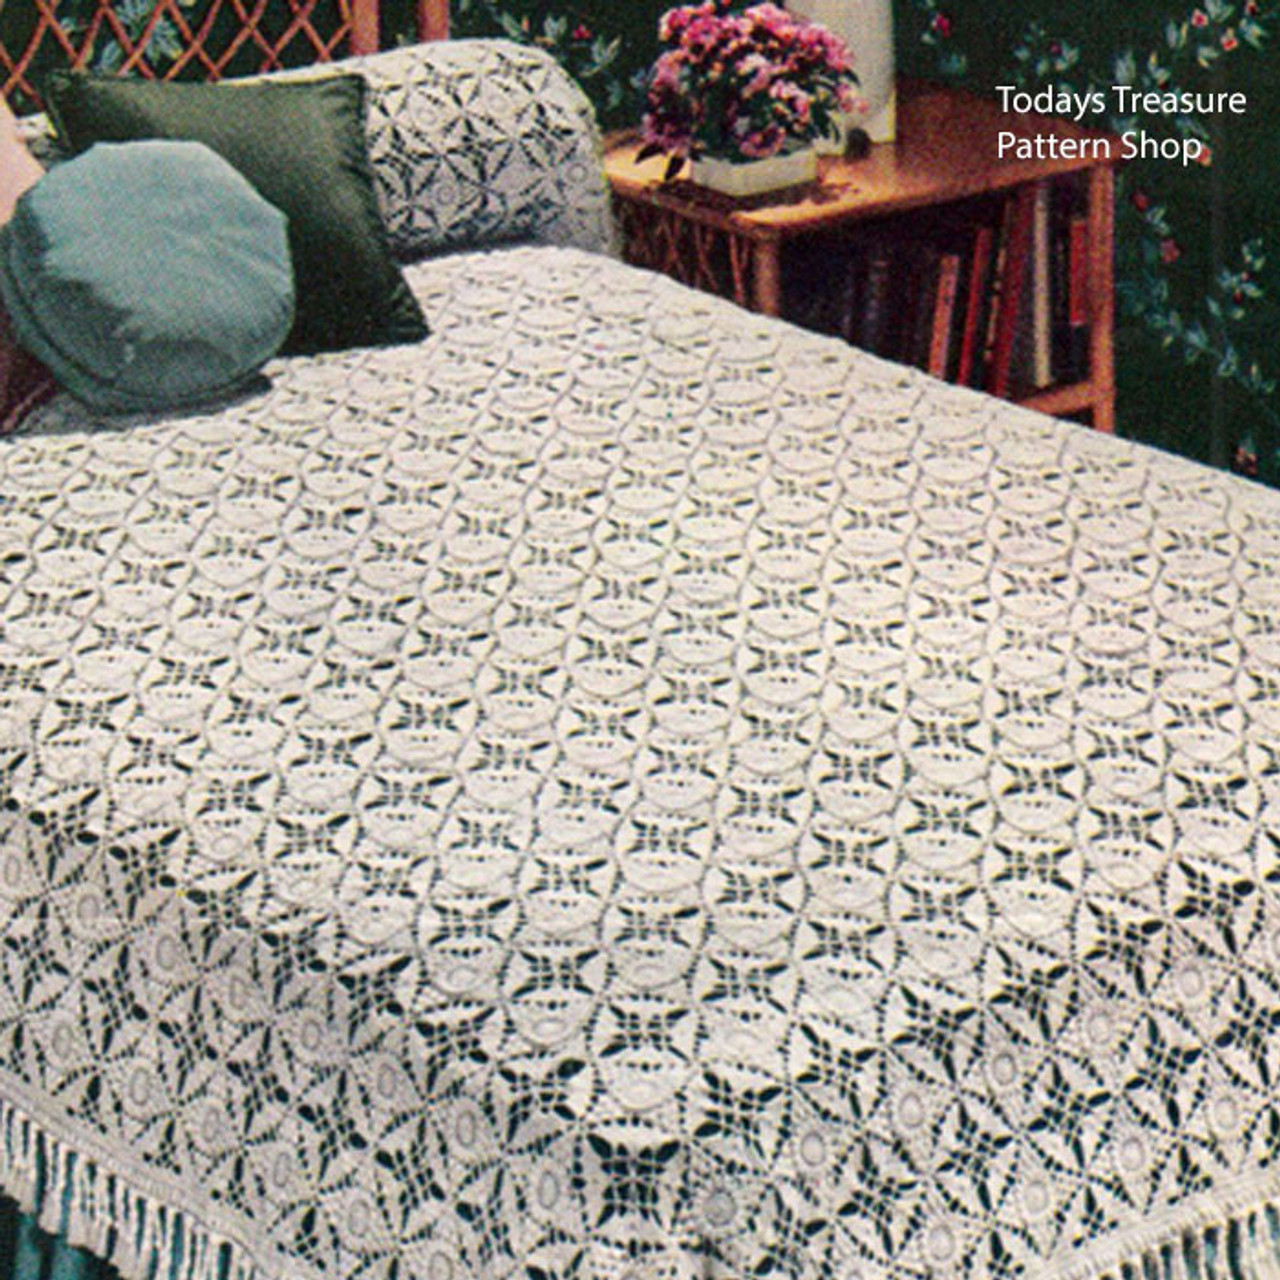 Crocheted California Modern Bedspread Pattern